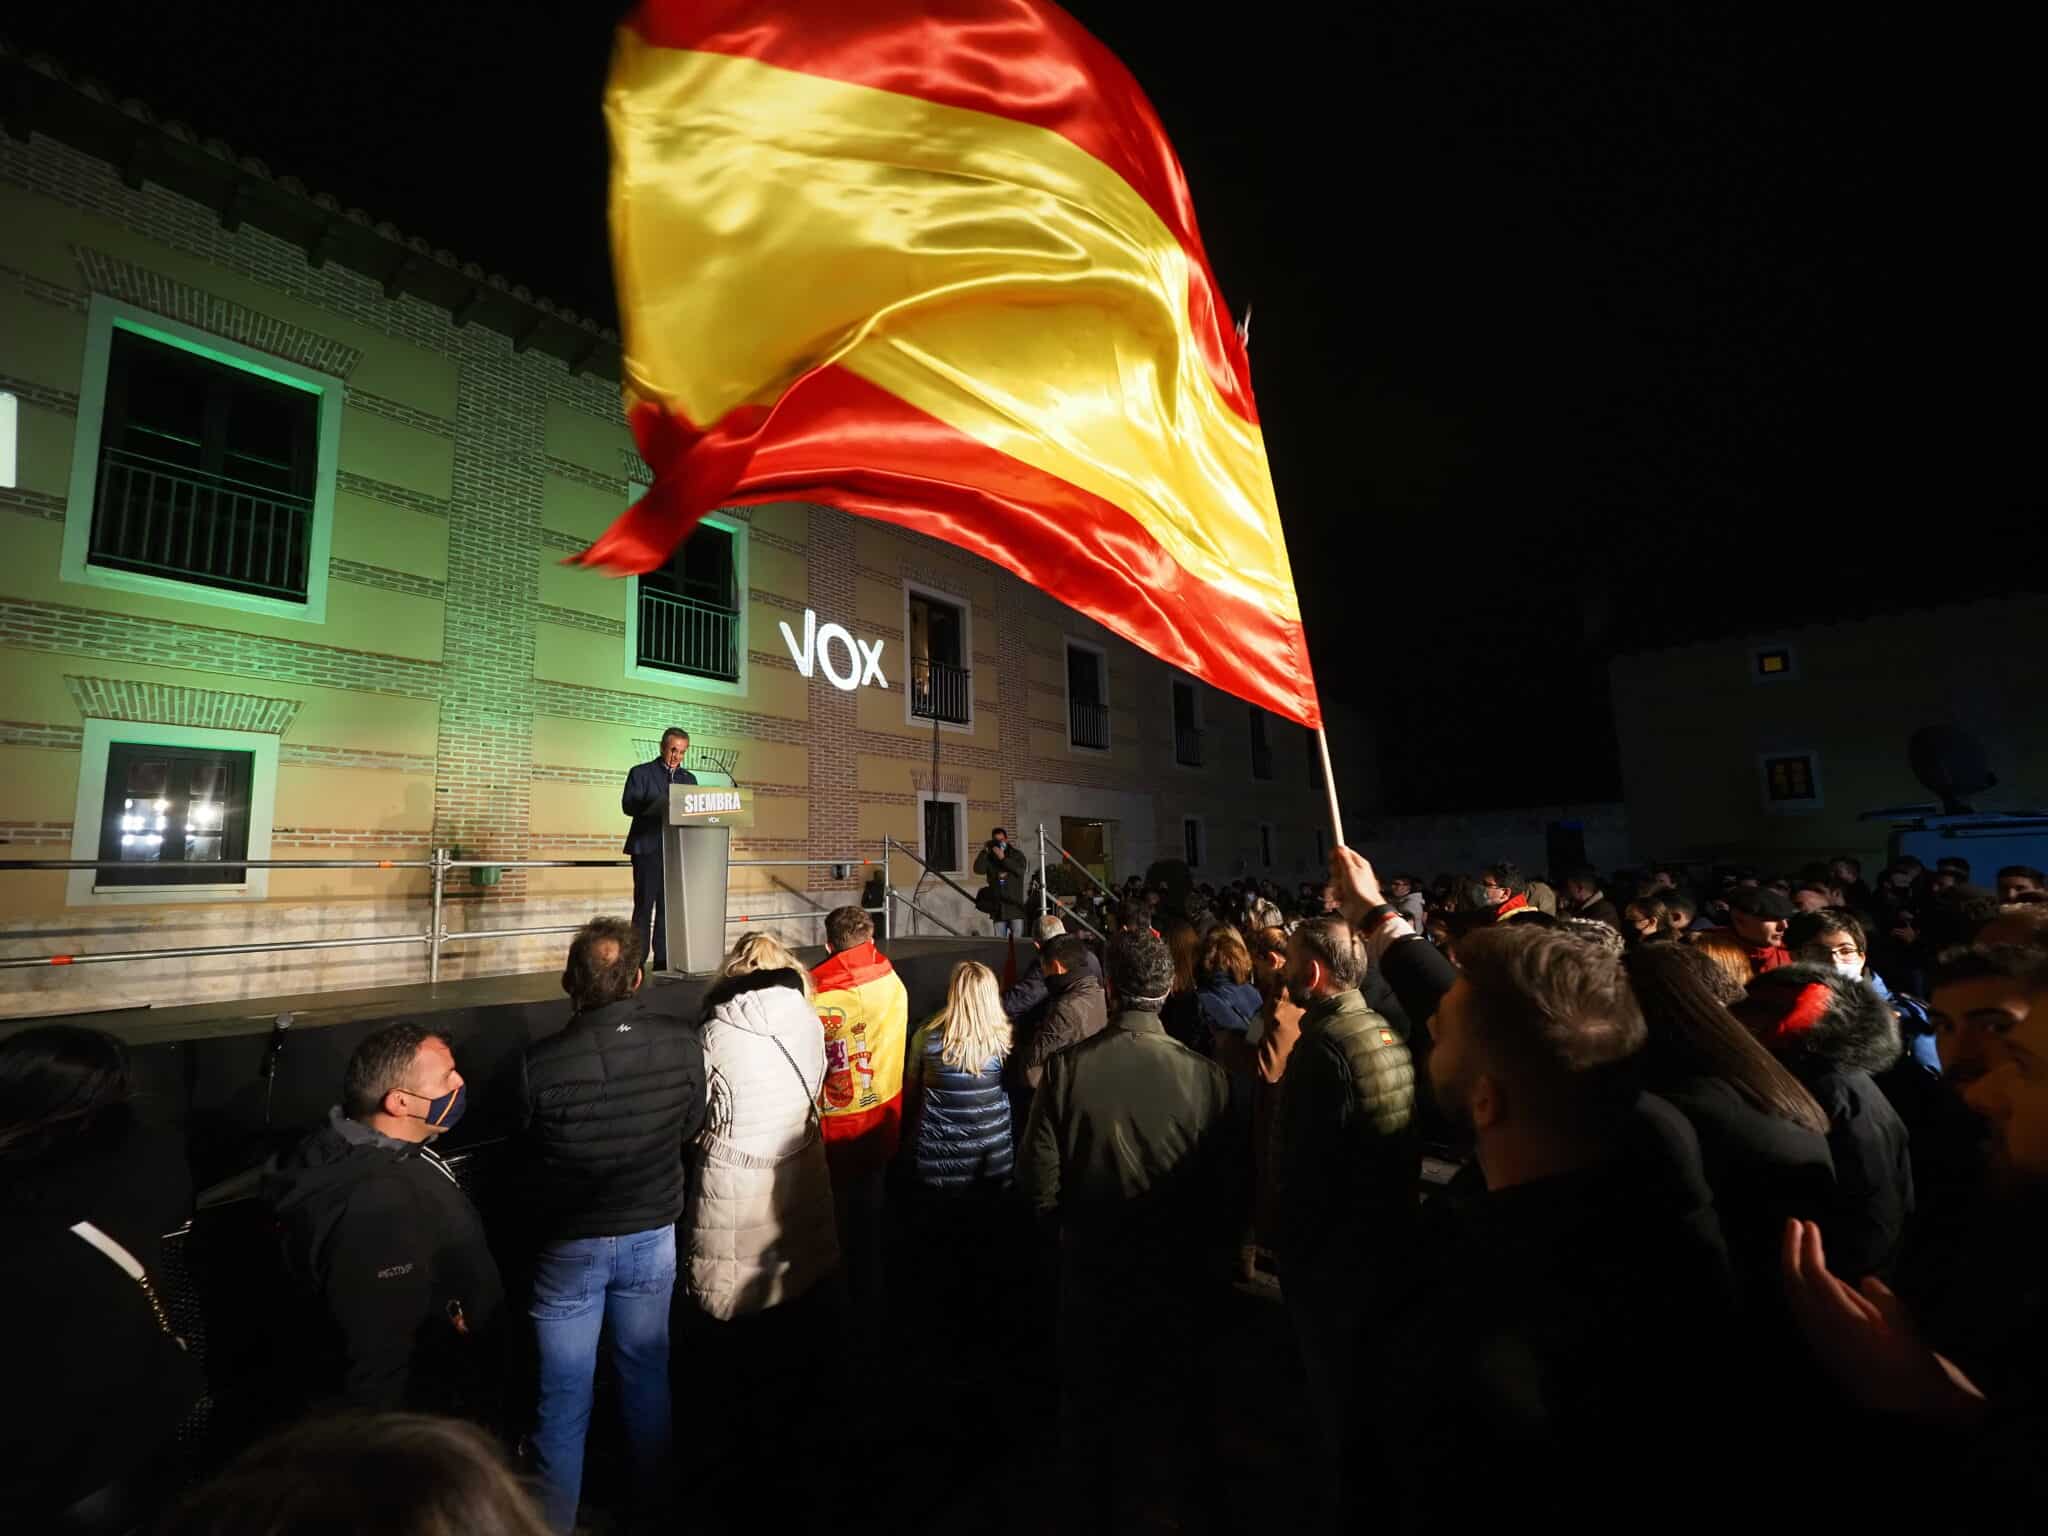 Celebración de Vox en Valladolid tras la jornada electoral del 13-F.